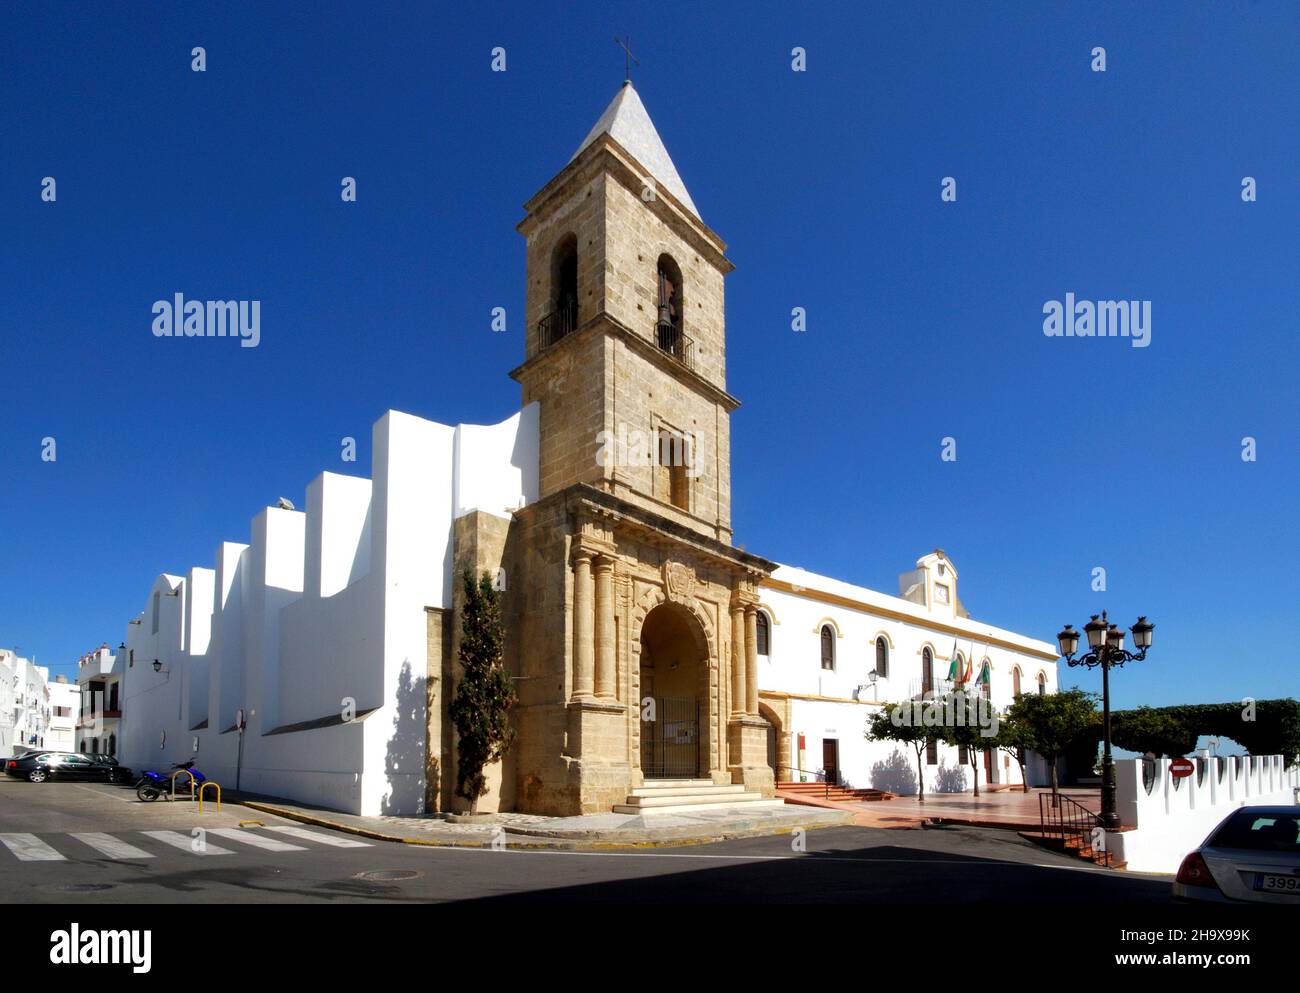 Saint Catherine of Alexandria church, Conil de la Frontera, Costa de la Luz, Cadiz Province, Andalusia, Spain. Stock Photo